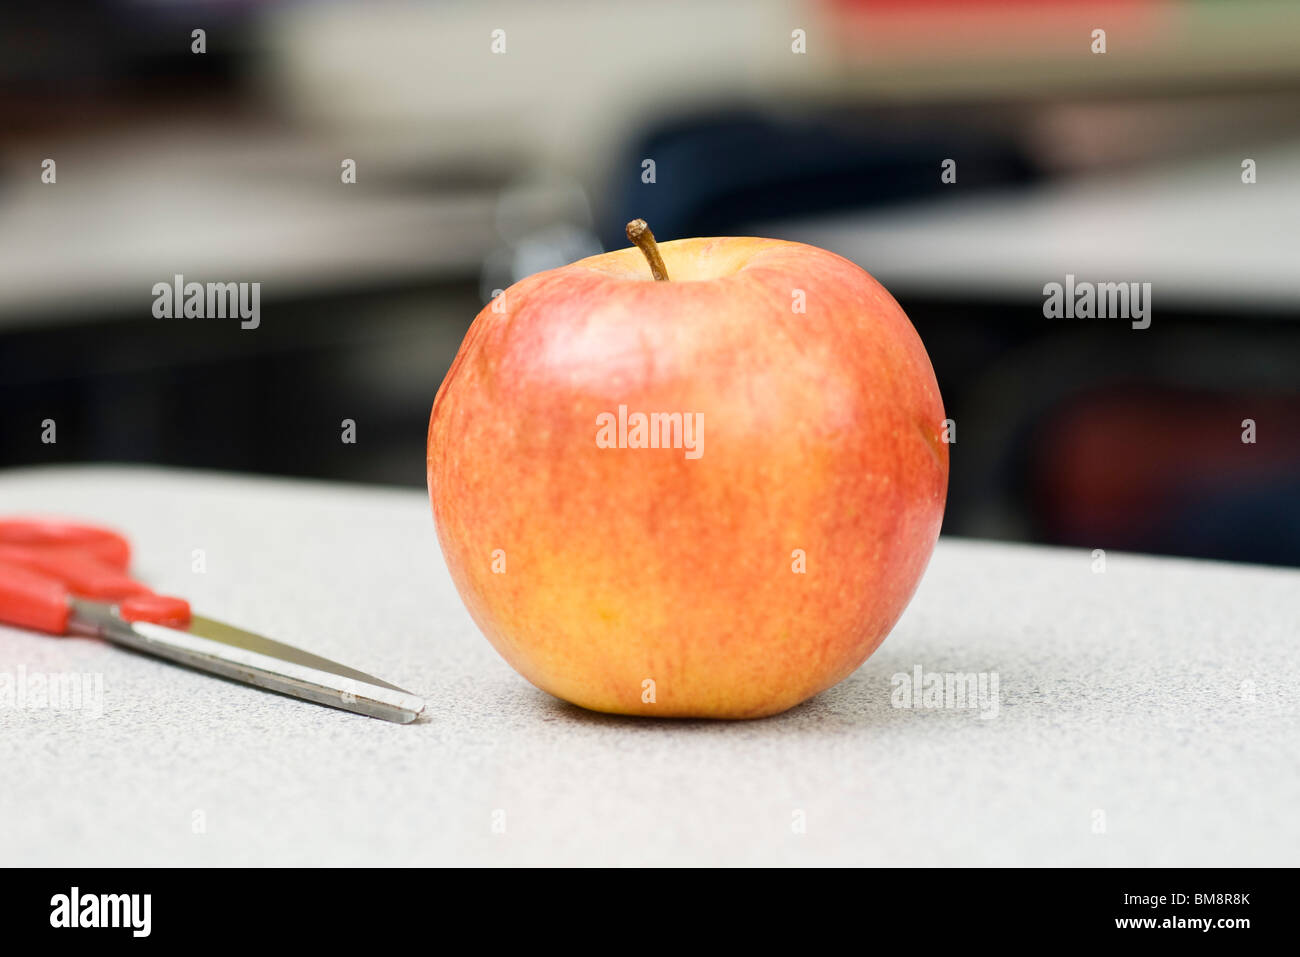 Apple on school desk Stock Photo